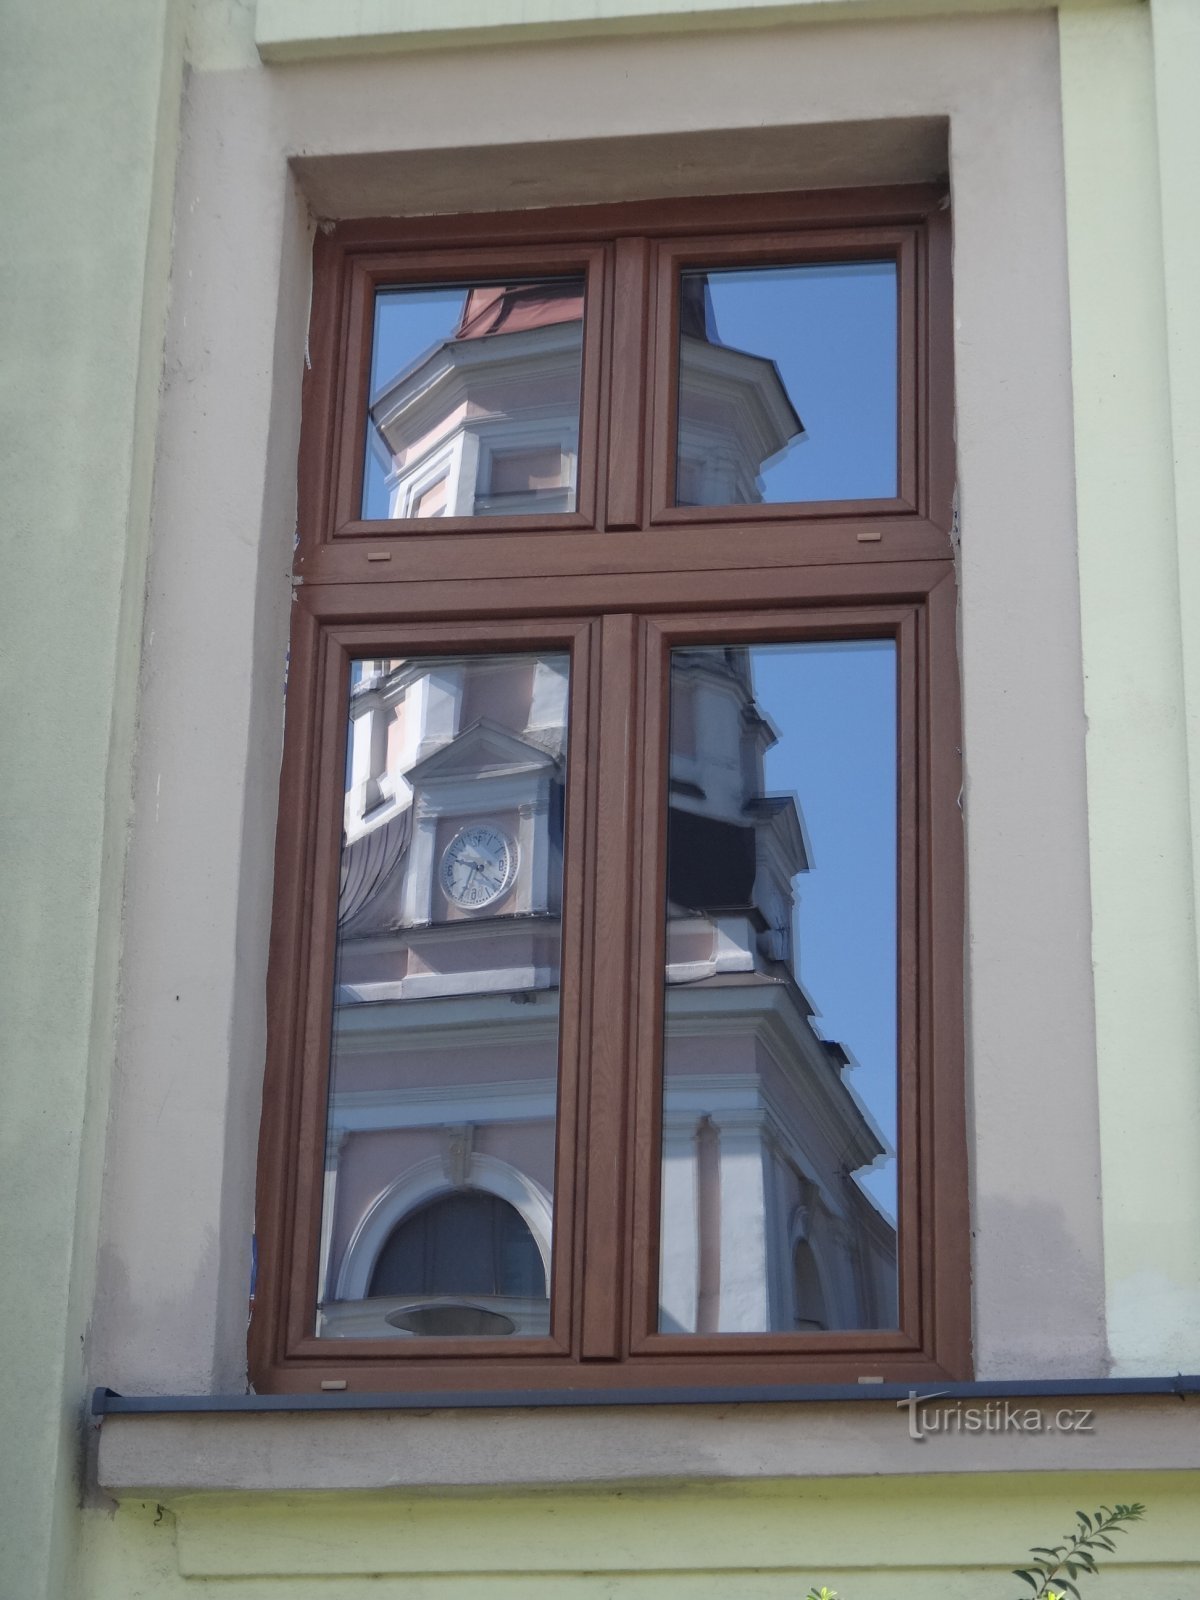 el reflejo de la iglesia en las ventanas del ayuntamiento